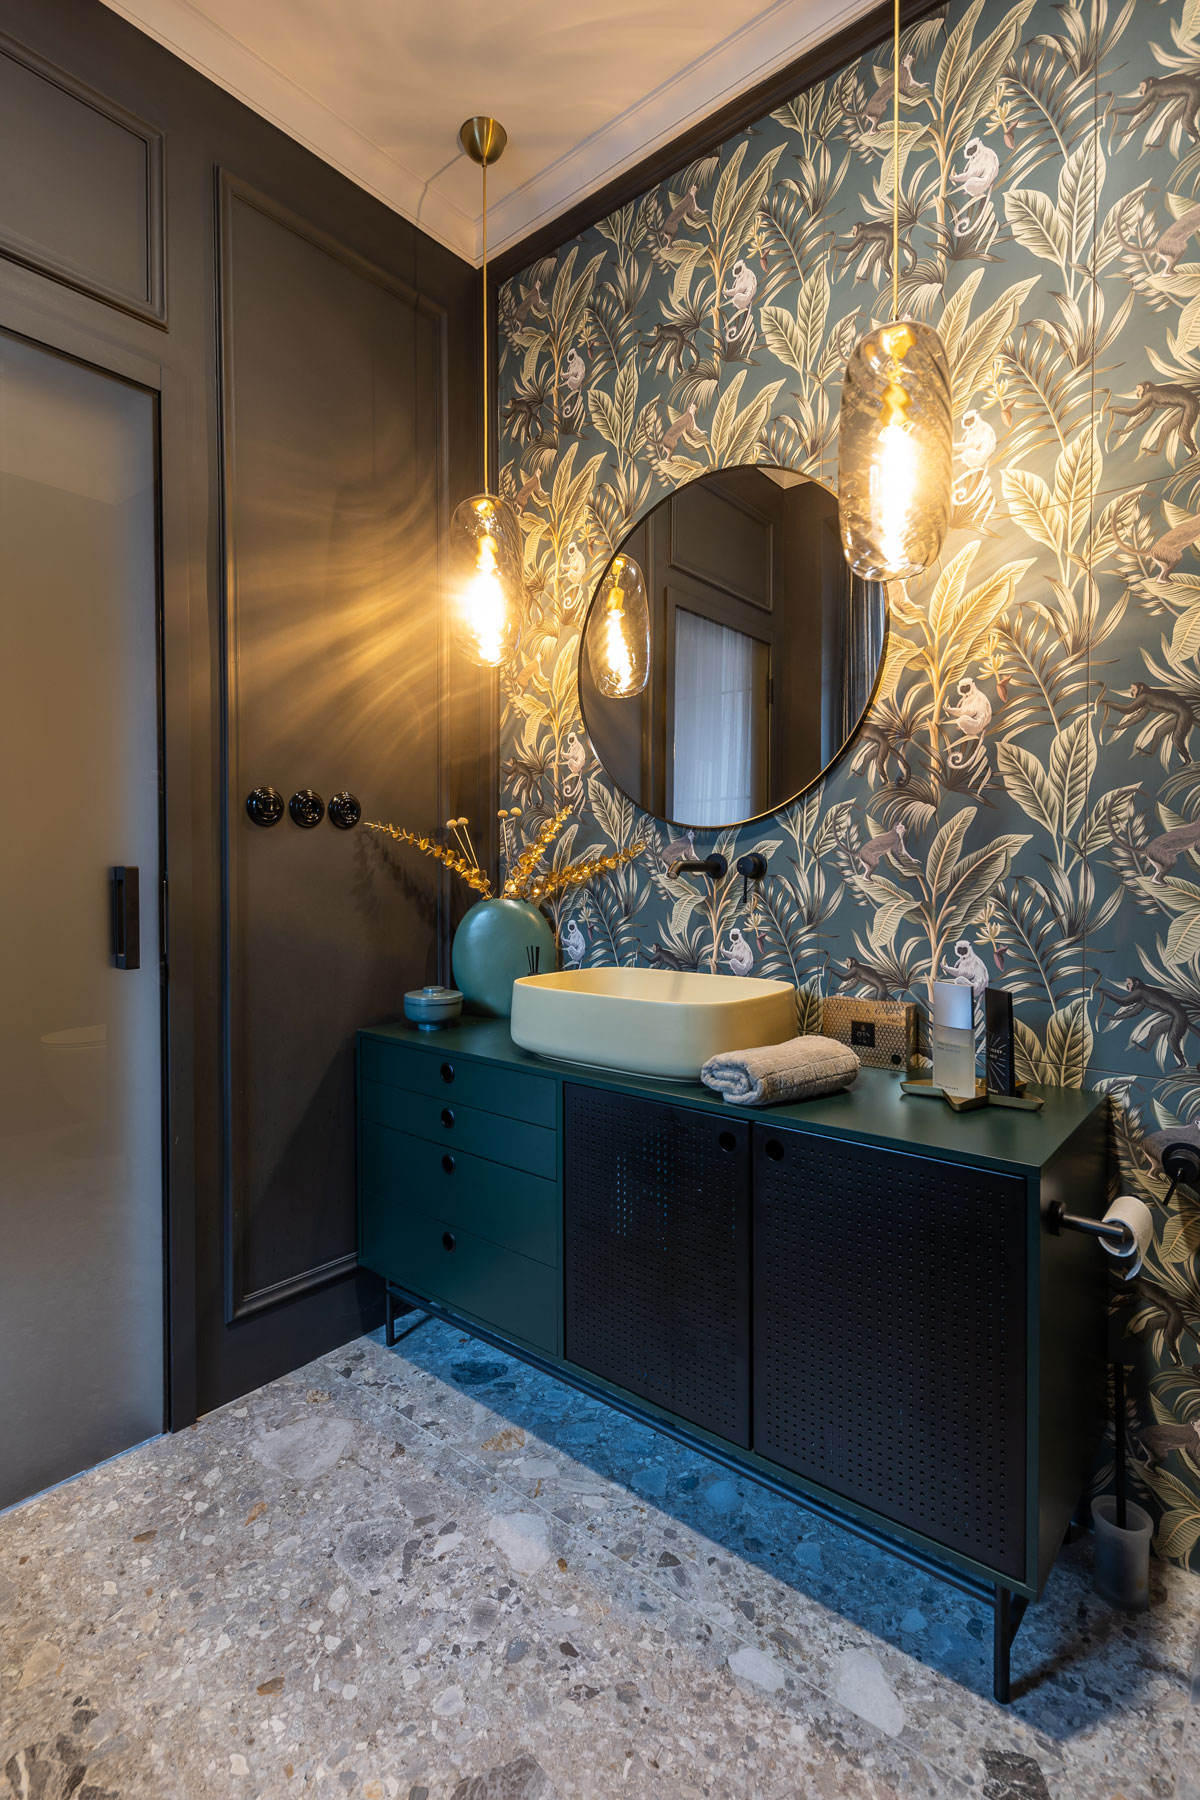 tmavá elegantná kúpeľňa s čiernou skrinkou a umývadlom v žltej farbe, stenu tvorí obklad s tropickým motívom s opicami, na stene je tiež zavesené okrúhle zrkadlo, kúpeľňu osvetľujú retro svietidlá, podlaha je imitáciou terazzových mramorových dlažieb